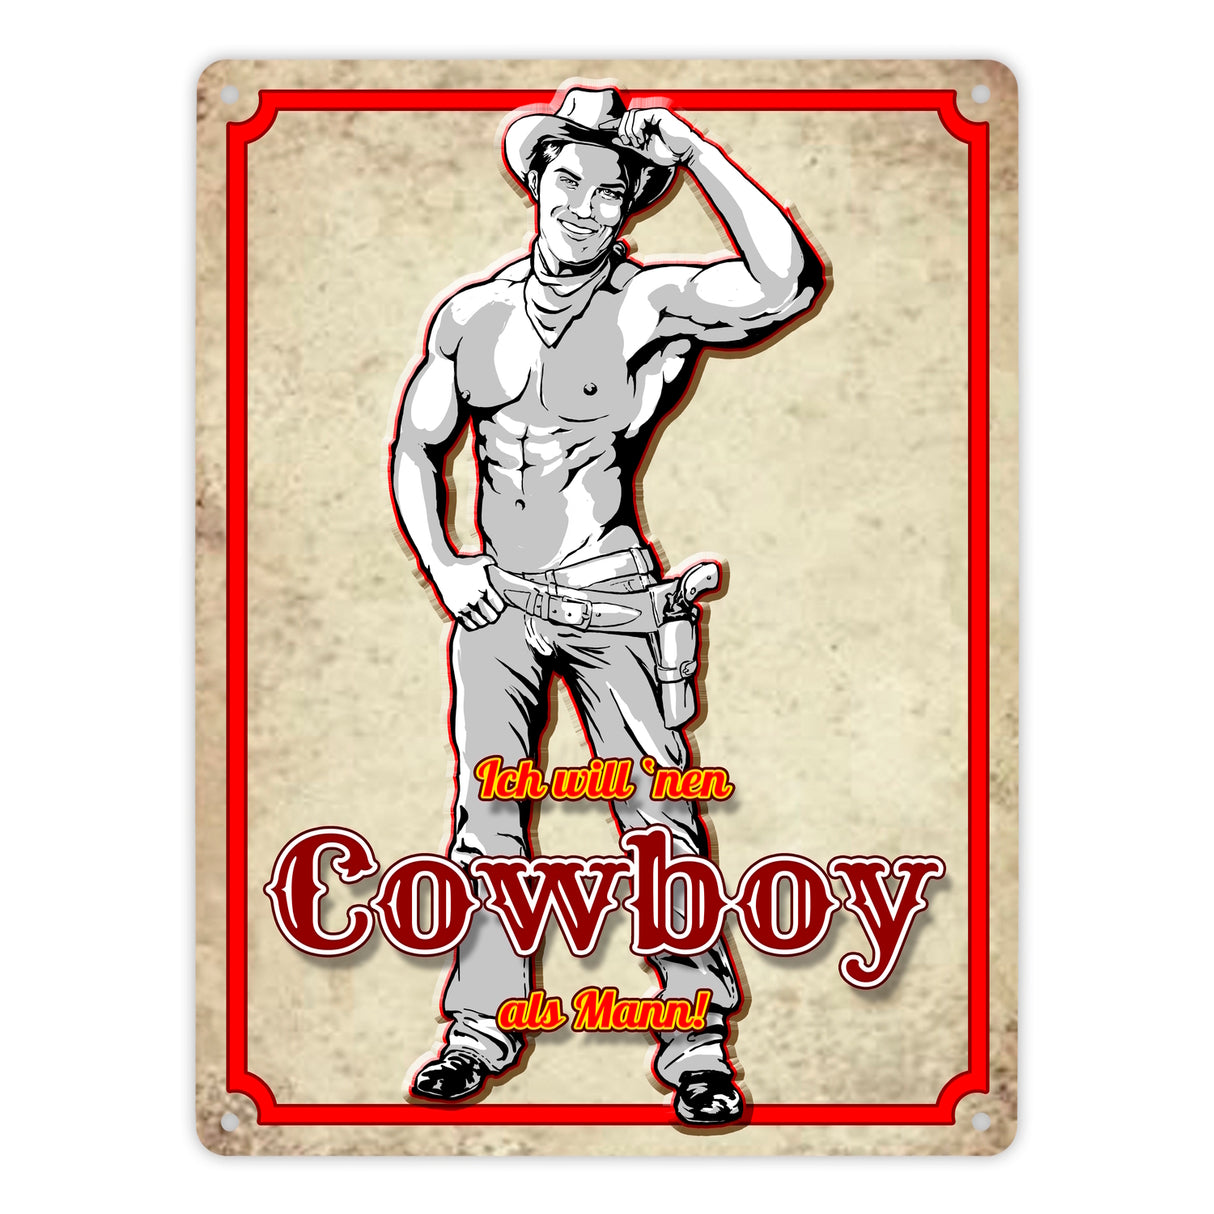 Metallschild mit sexy Cowboy und Spruch - Ich will 'nen Cowboy als Mann